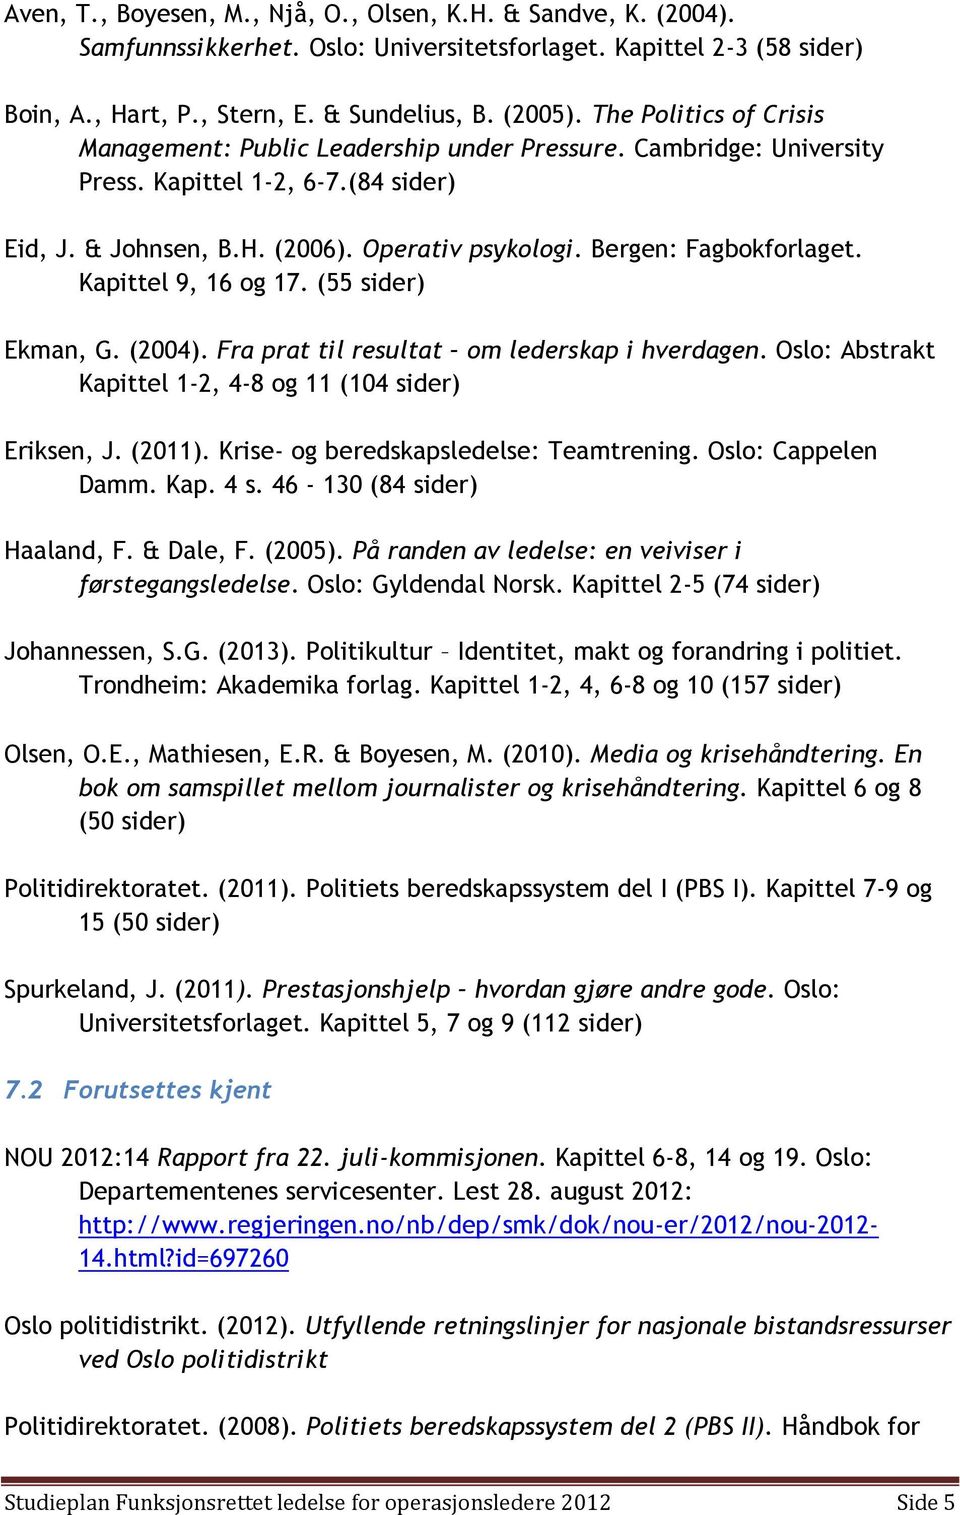 Bergen: Fagbokforlaget. Kapittel 9, 16 og 17. (55 sider) Ekman, G. (2004). Fra prat til resultat om lederskap i hverdagen. Oslo: Abstrakt Kapittel 1-2, 4-8 og 11 (104 sider) Eriksen, J. (2011).